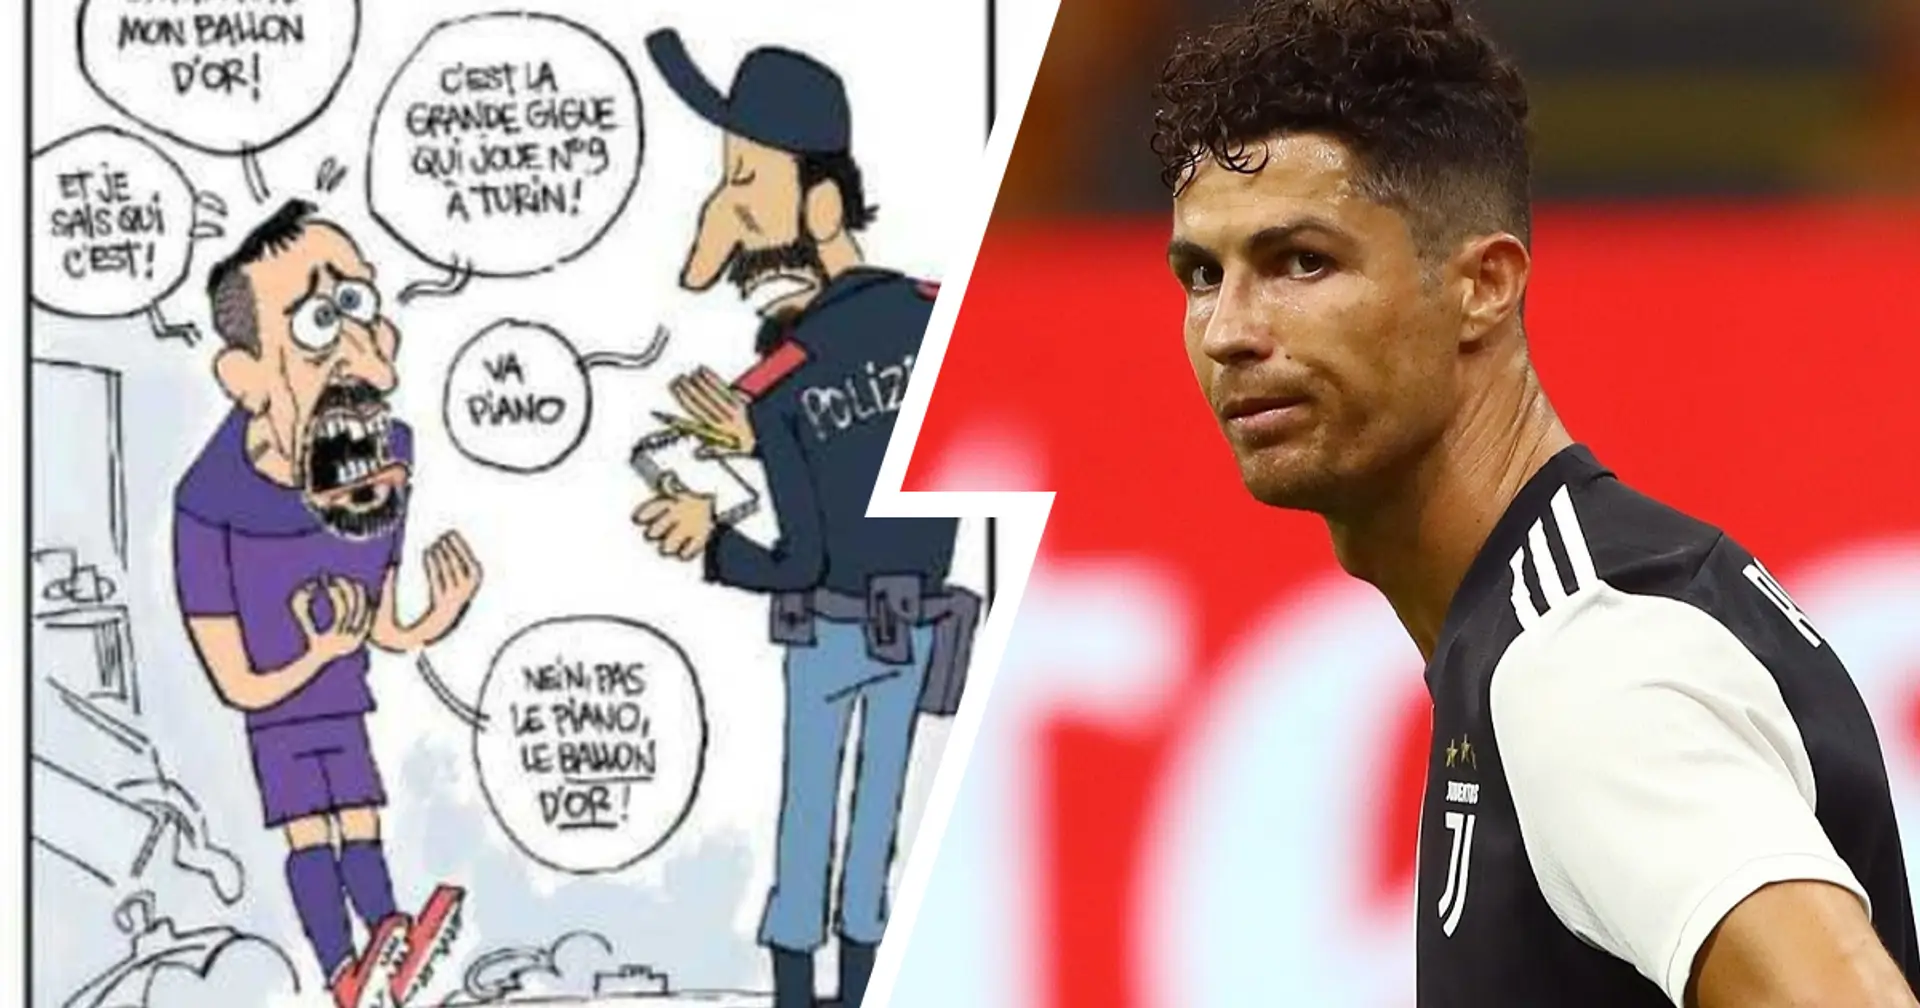 L'Equipe ironizza sul furto subito da Franck Ribery: nella vignetta satirica il ladro diventa Cristiano Ronaldo